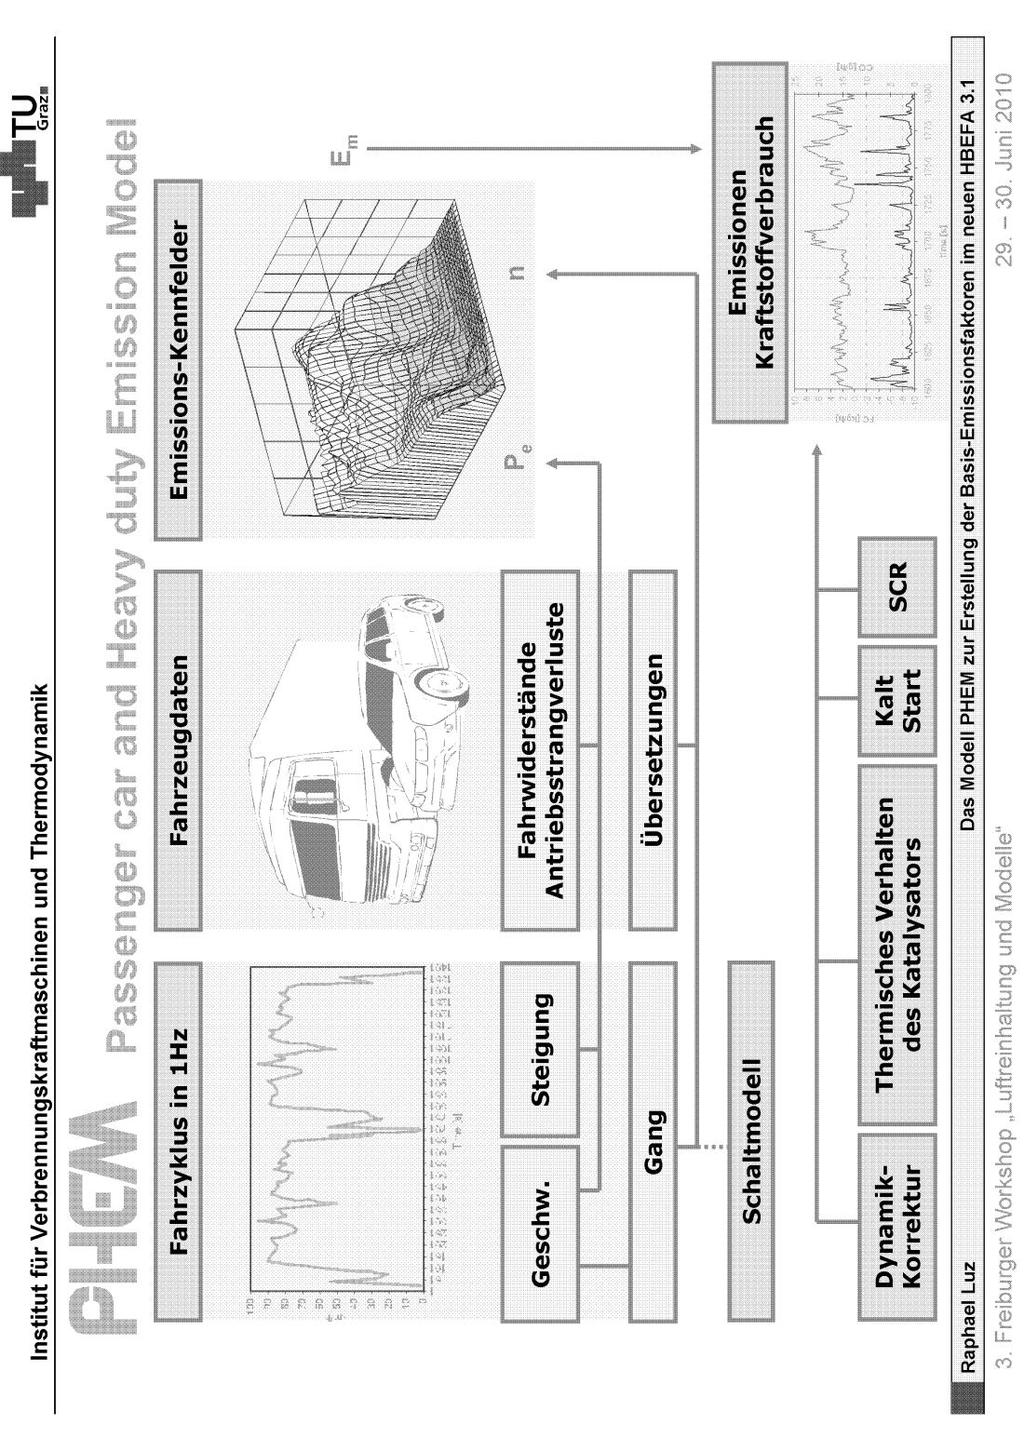 Bild 3.1: Das Modell PHEM zur Erstellung der Basis-Emissionsfaktoren in HBEFA3.